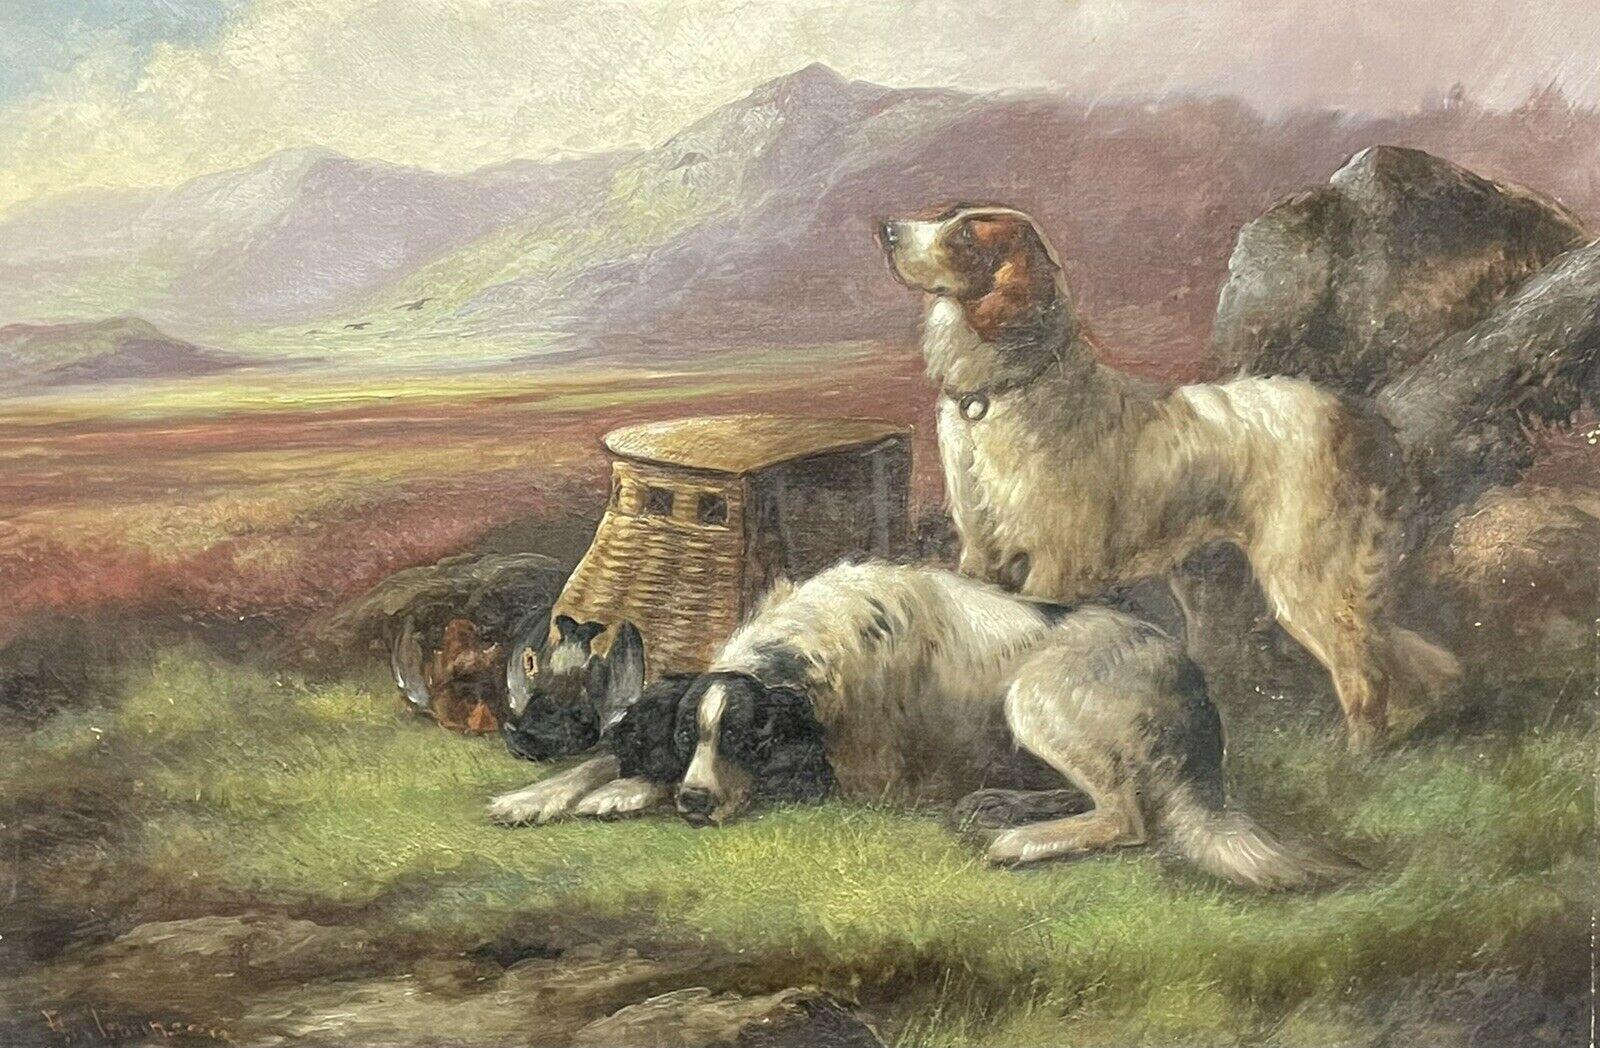 ROBERT CLEMINSON (1864-1903) LARGE SIGNED OIL - HIGHLAND SETTER DOGS LANDSCAPE